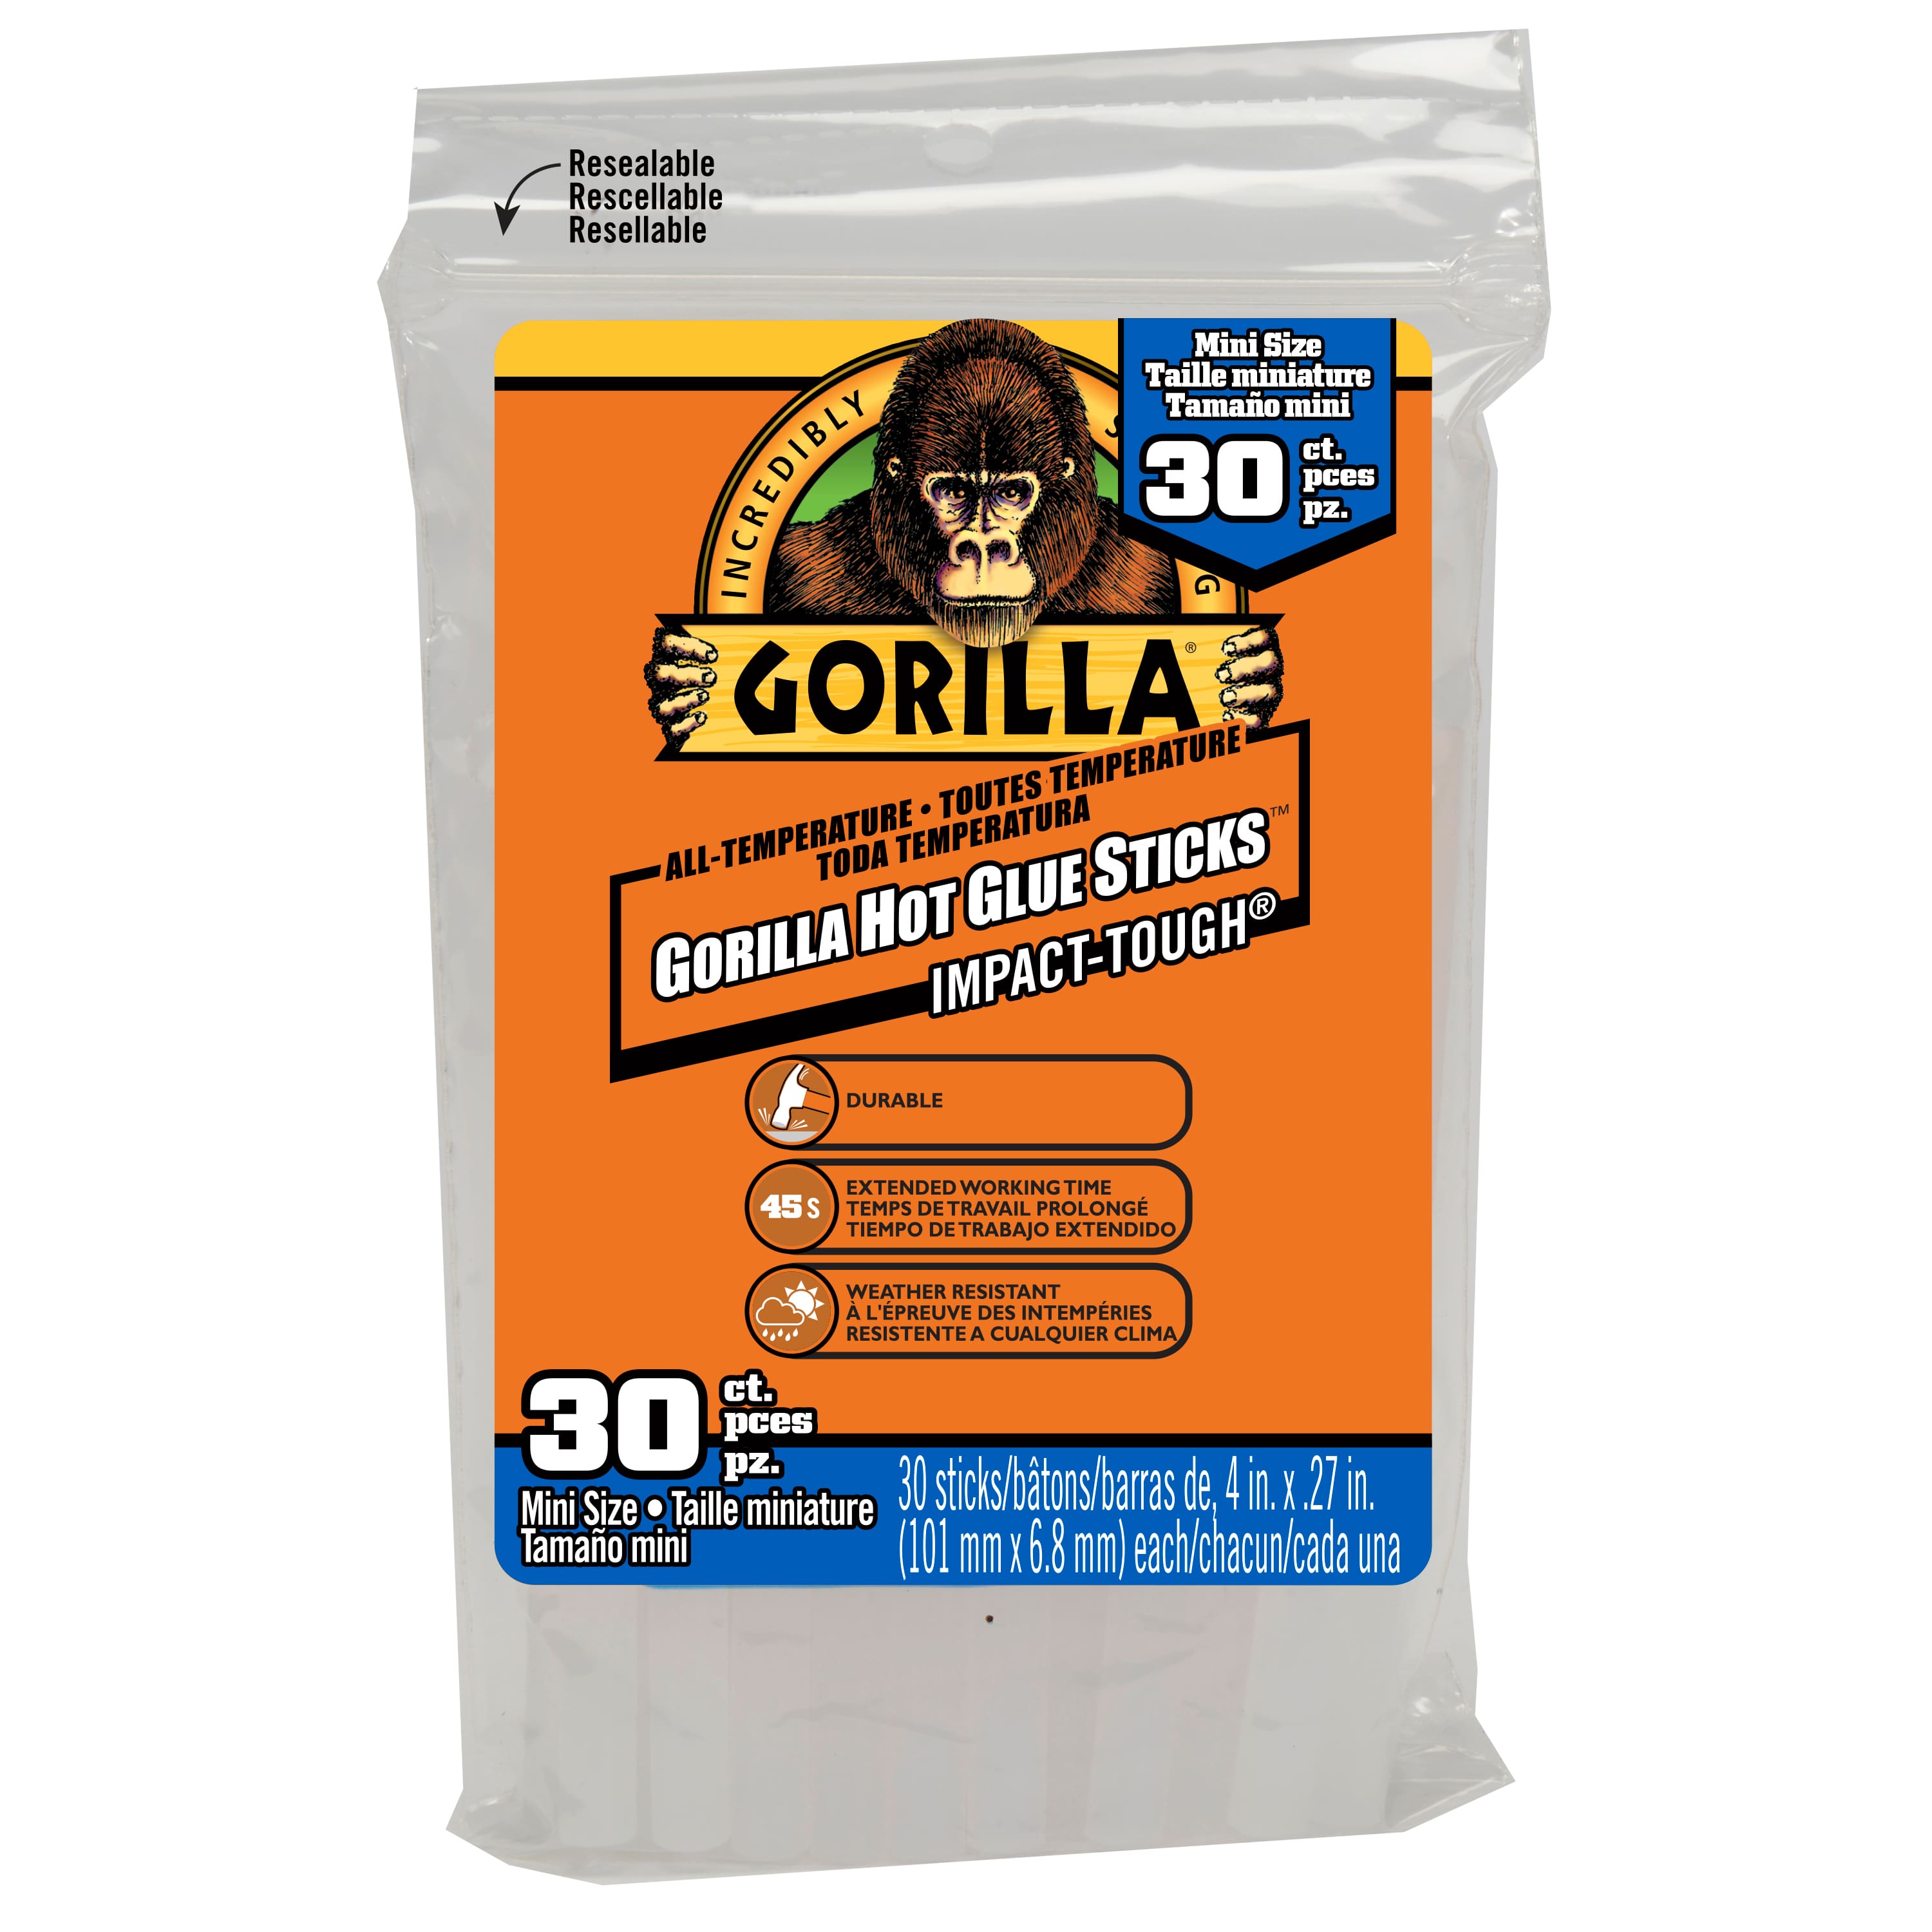  Gorilla 3022502 Hot Glue Sticks 8 In. Mini Size